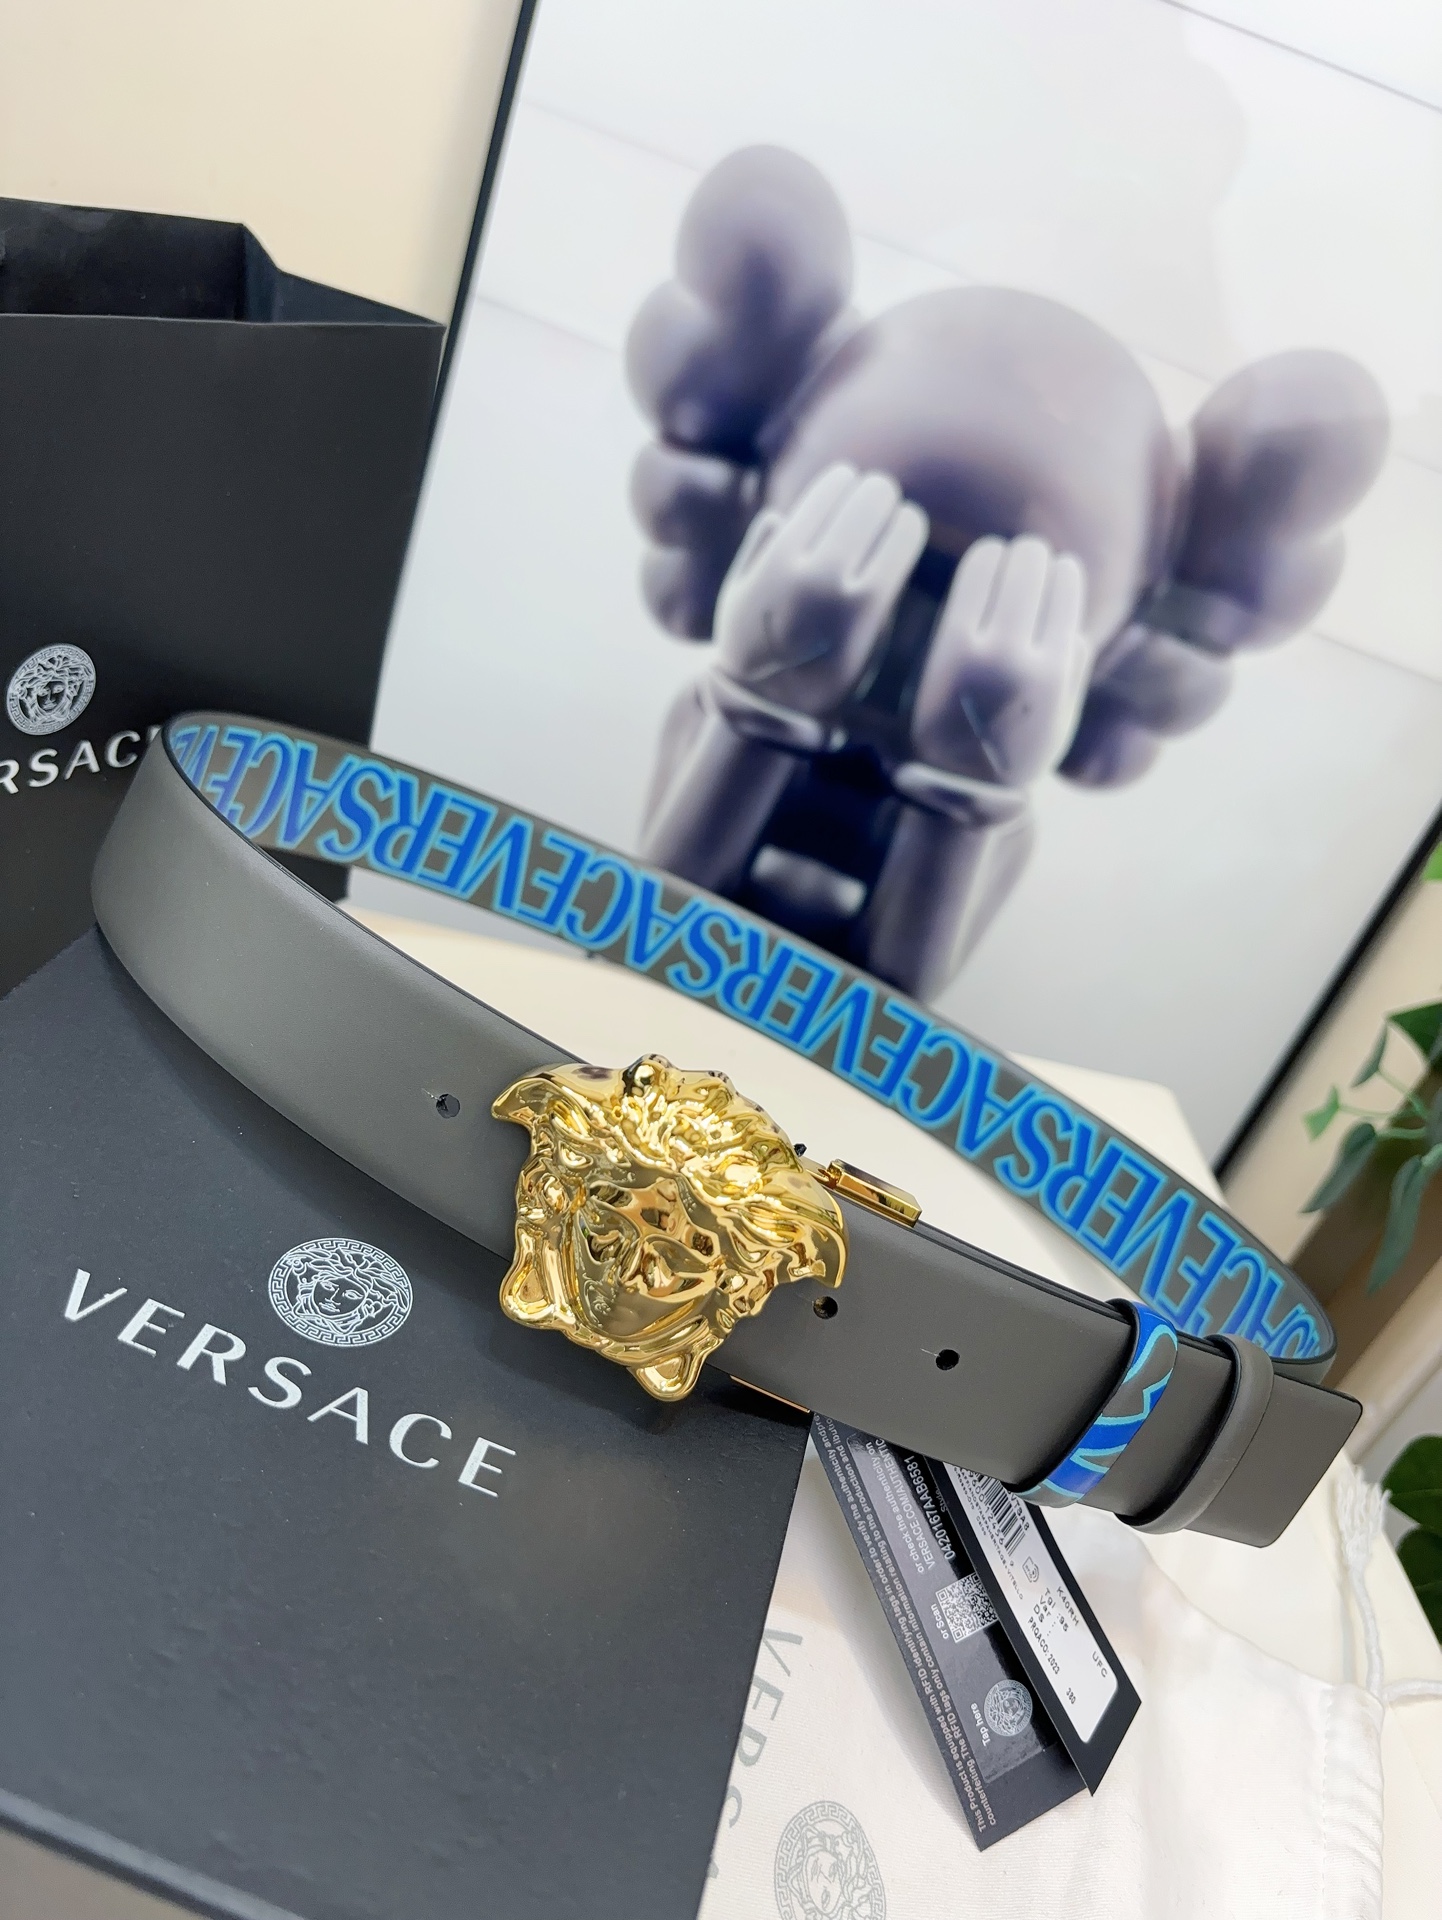 Versace范思哲的卡其色双面腰带采用小牛皮制成金色搭扣饰有品牌标志性的美杜莎头像一面饰有蓝色和绿色的